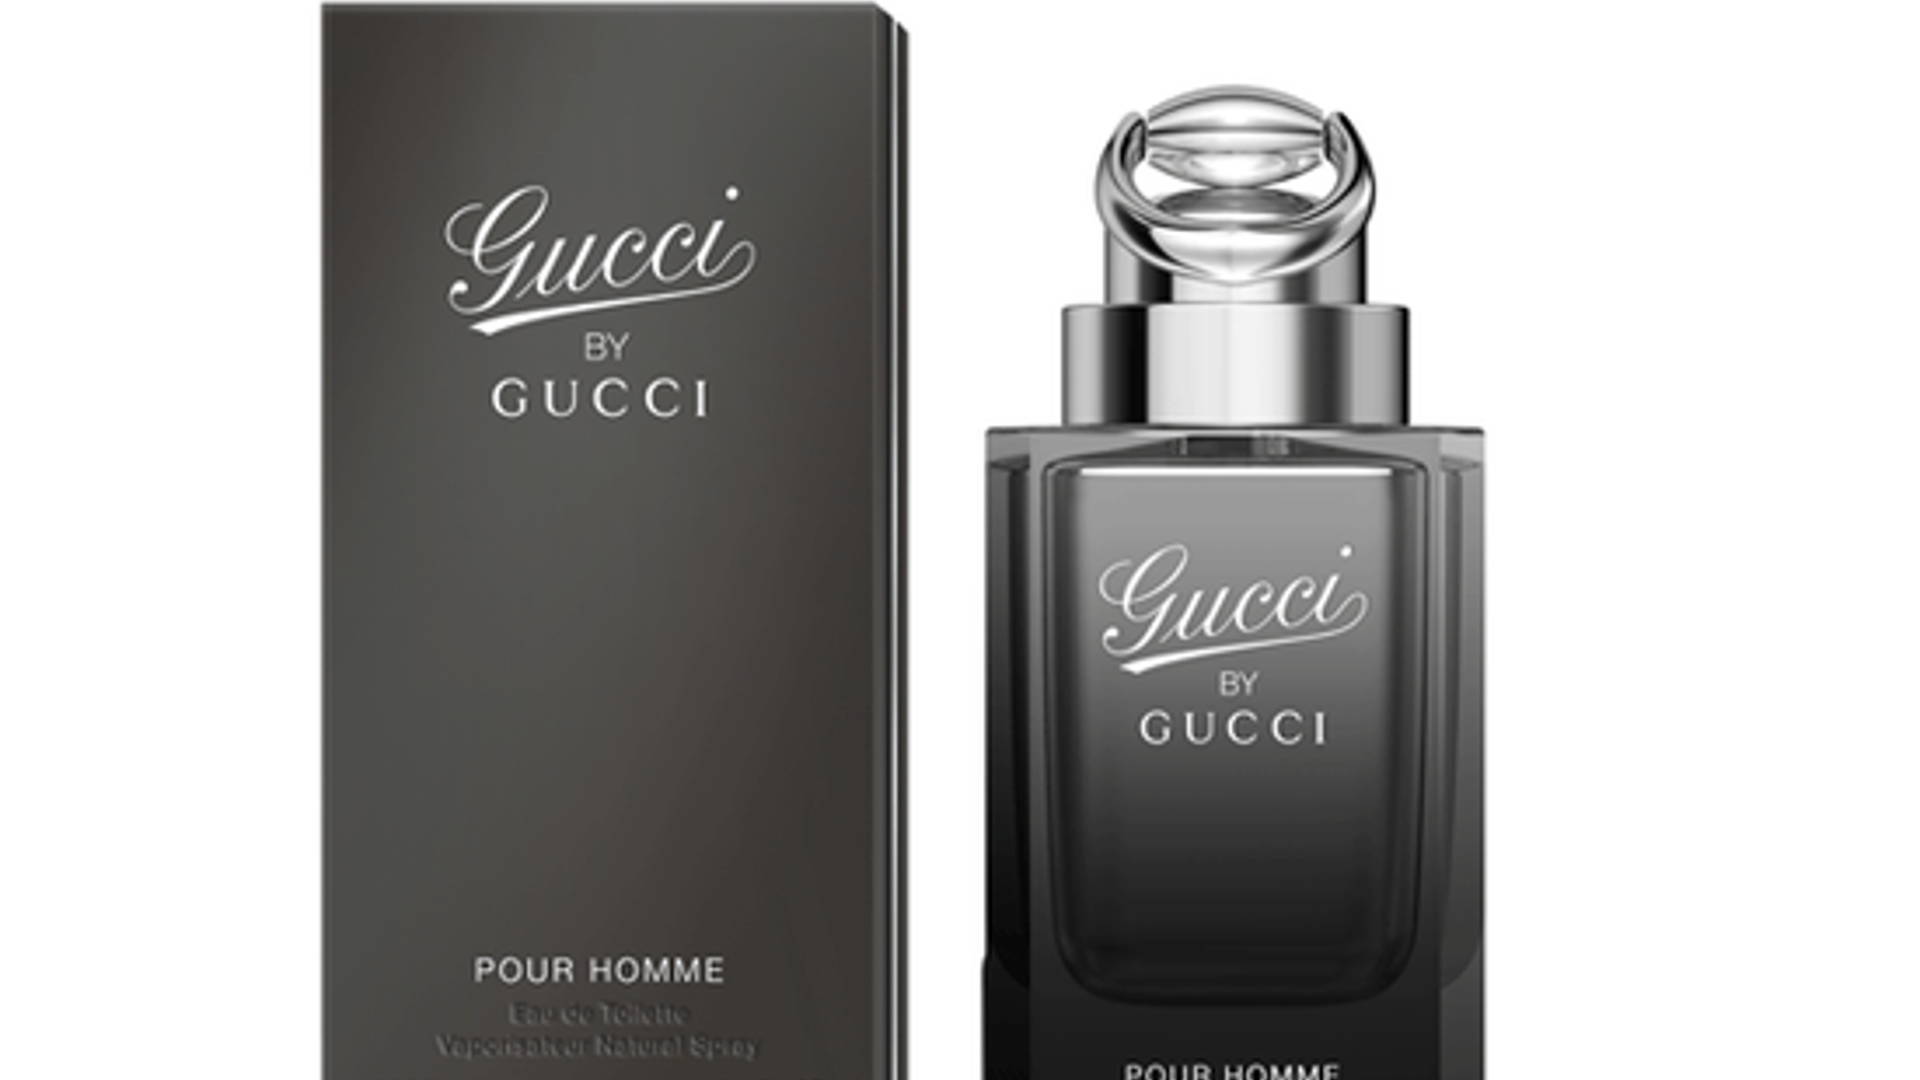 Туалетная вода gucci pour homme. Gucci by Gucci pour homme EDT, 90 ml. Gucci "Gucci pour homme" 100 ml. Gucci by Gucci pour homme. Туалетная вода мужская 90 мл Gucci by Gucci.